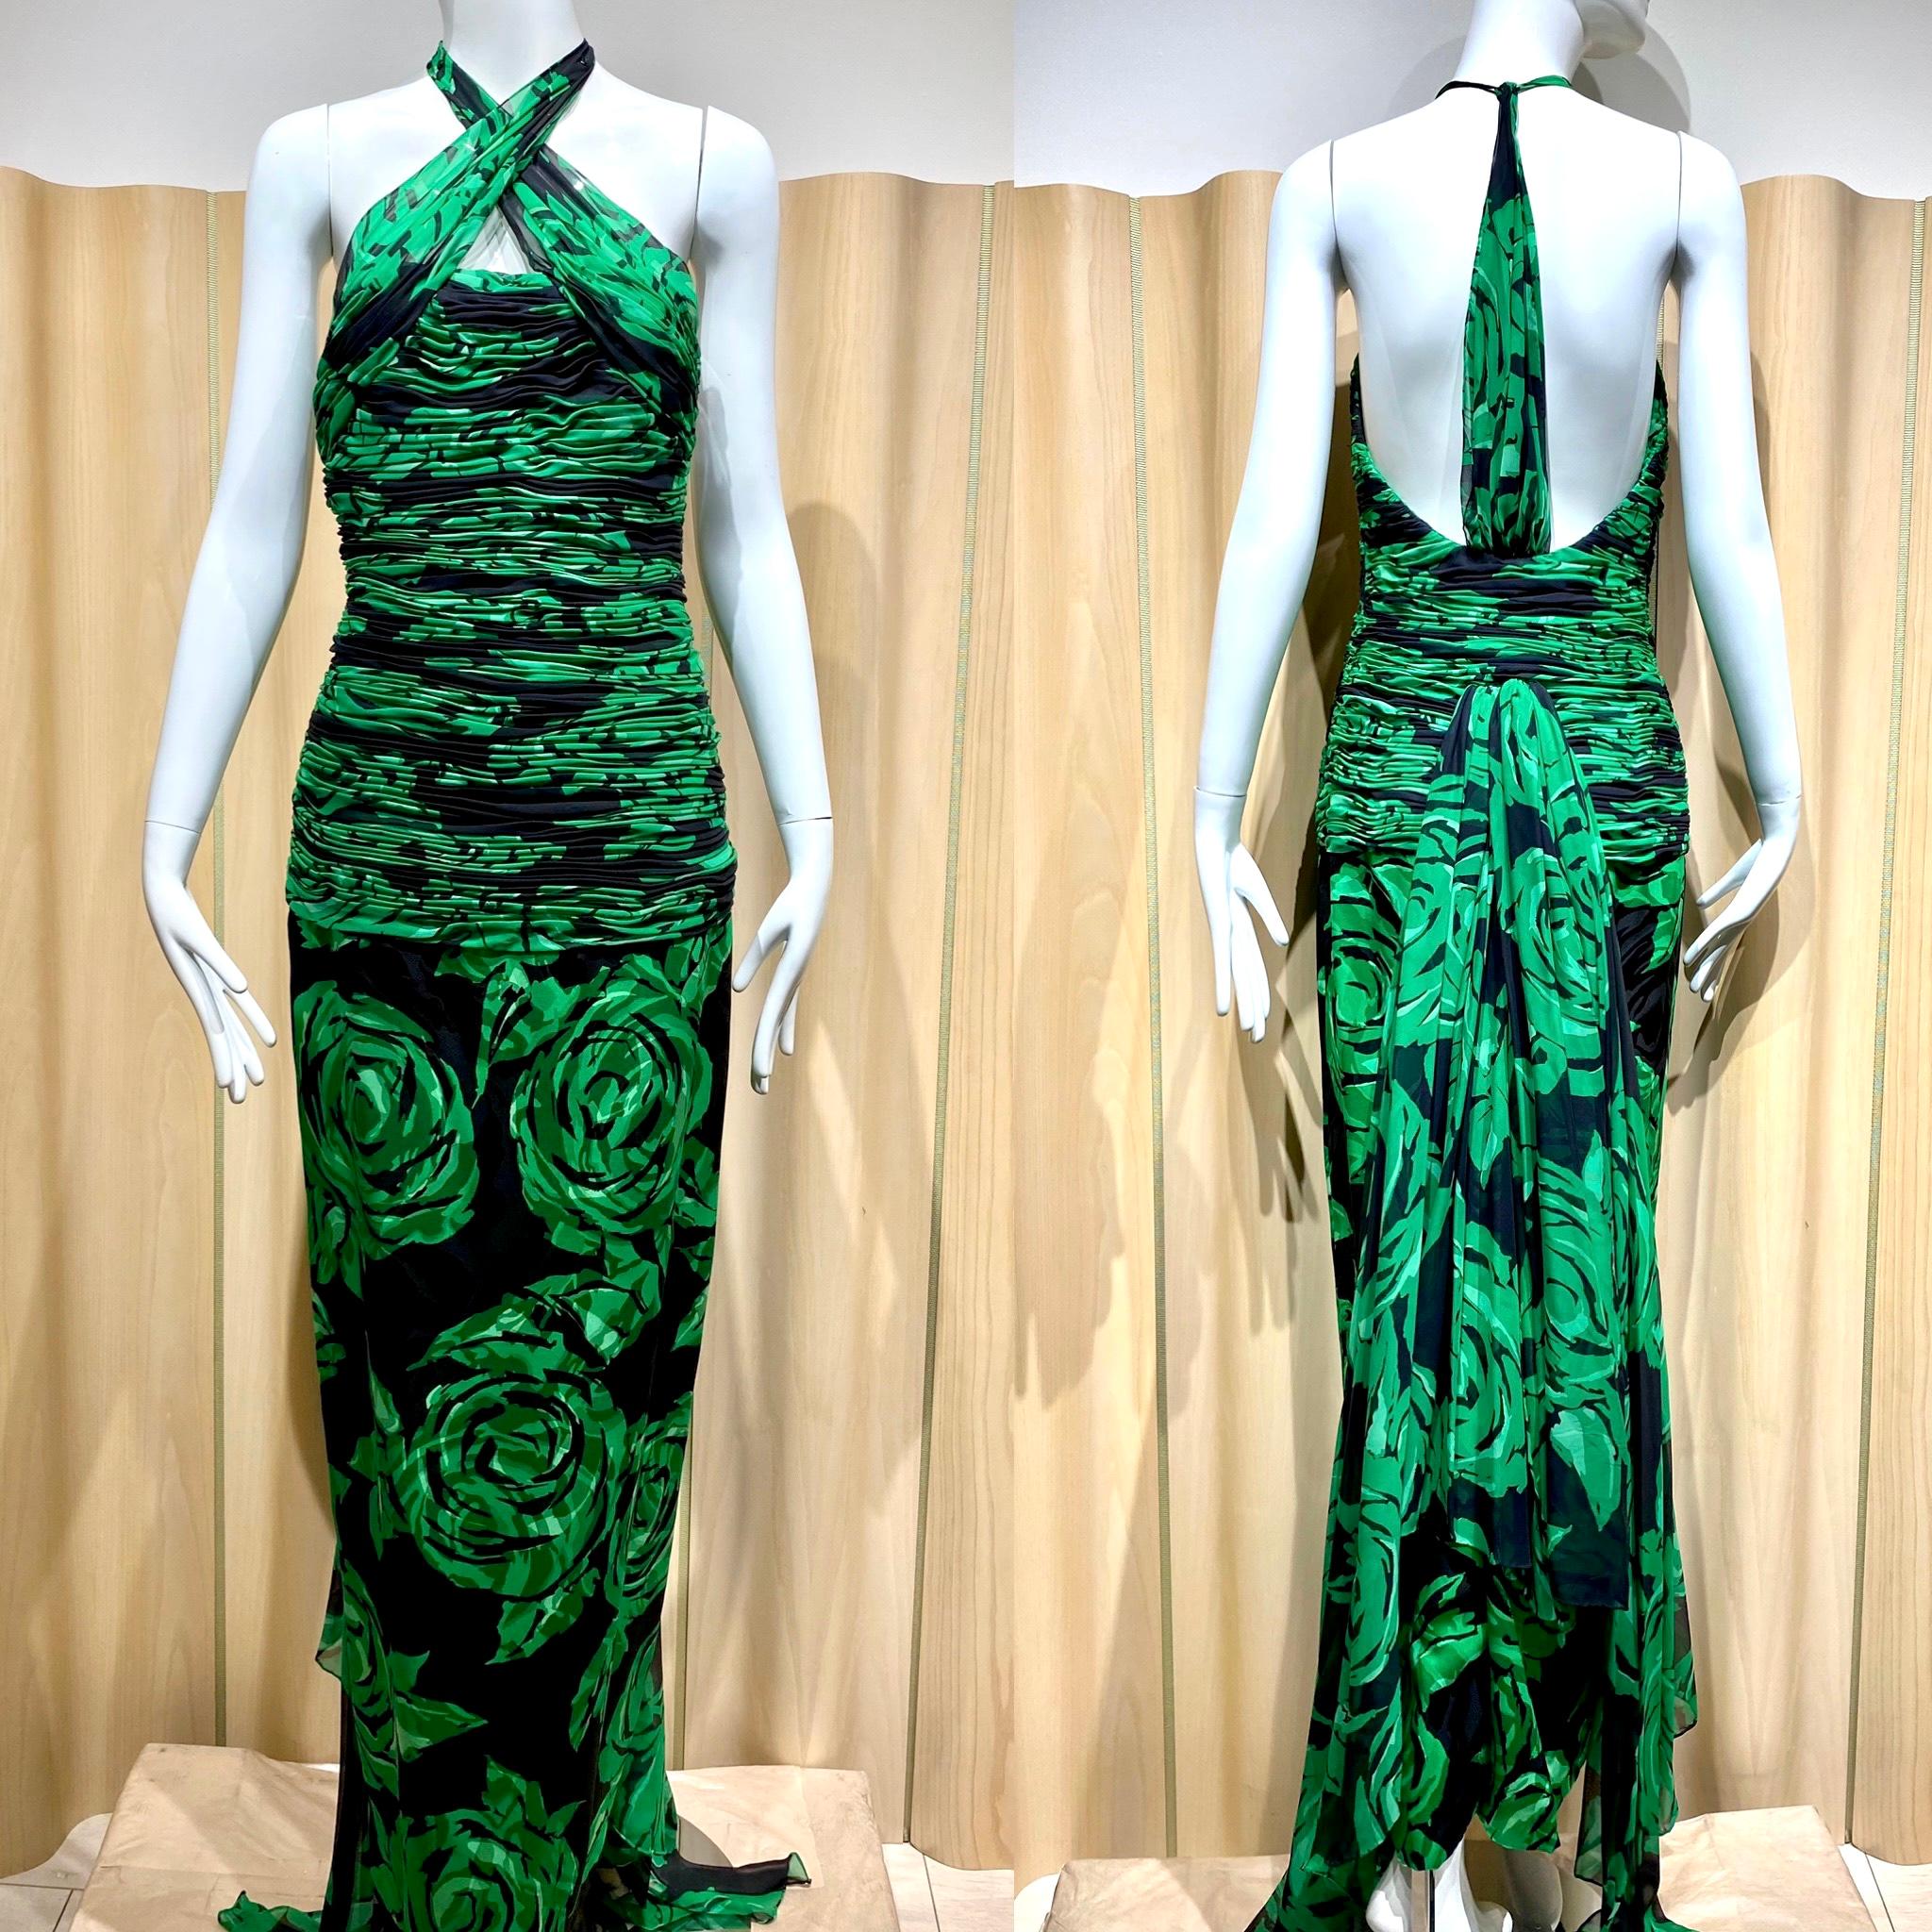 90er Jahre Valentino Grüner und schwarzer Rosendruck Seide Chiffon Halter Kleid mit abnehmbarem Cape.
Das Kleid hat einen Kreuzausschnitt und eine geraffte Taille. Das Kleid hat eine lange Schleppe, die als Umhang fungiert.
Brustumfang: 34